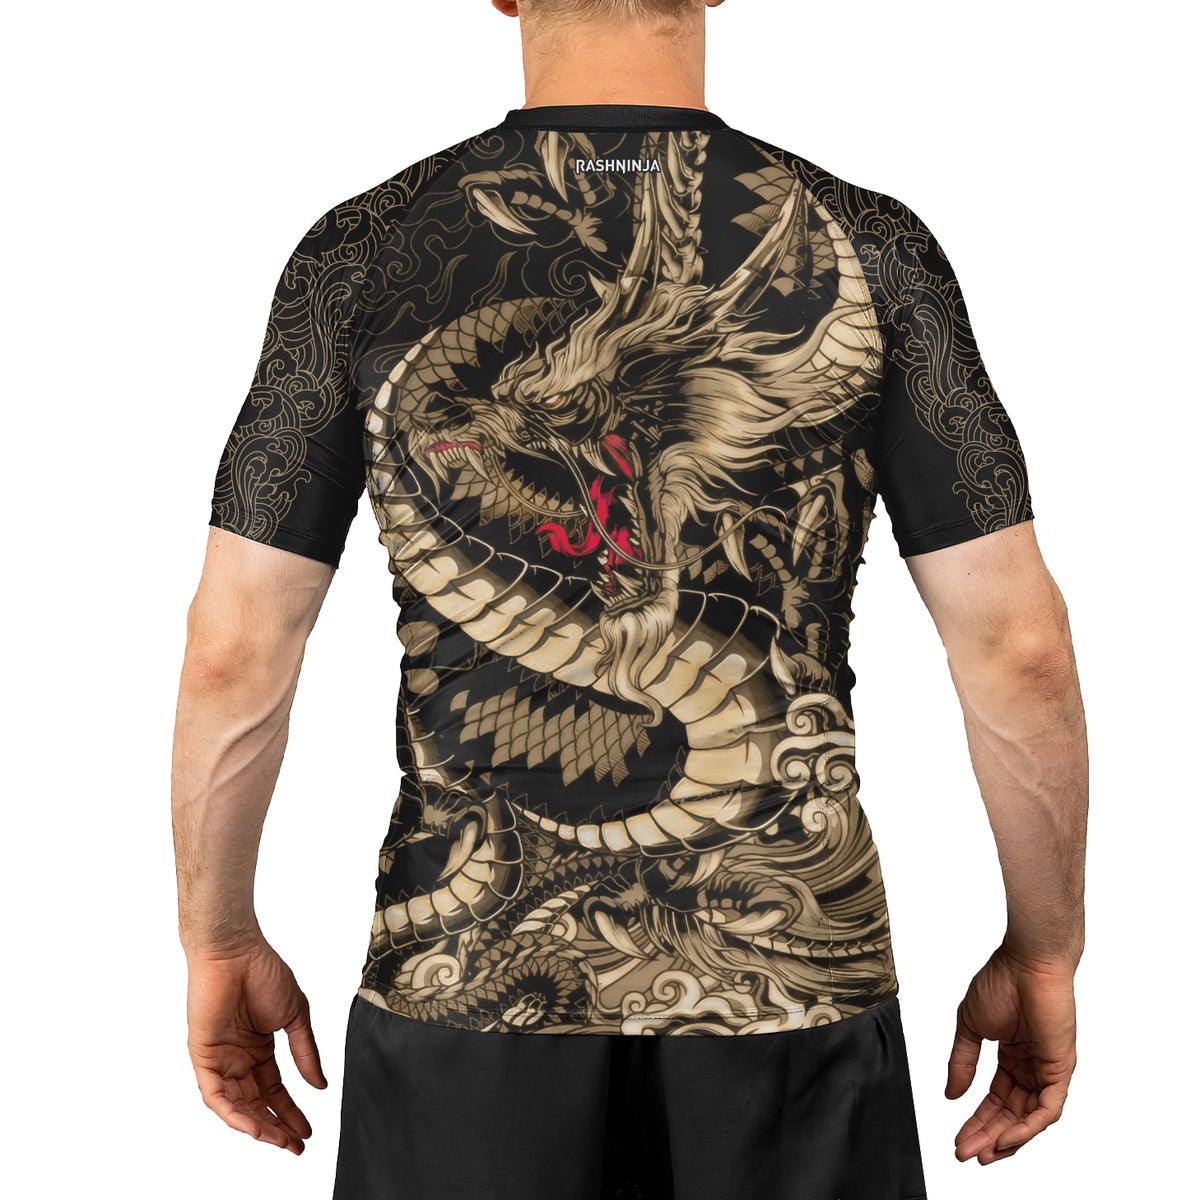 Rashninja Samurai vs Dragon Men's Short Sleeve Rash Guard - Rashninja LLC